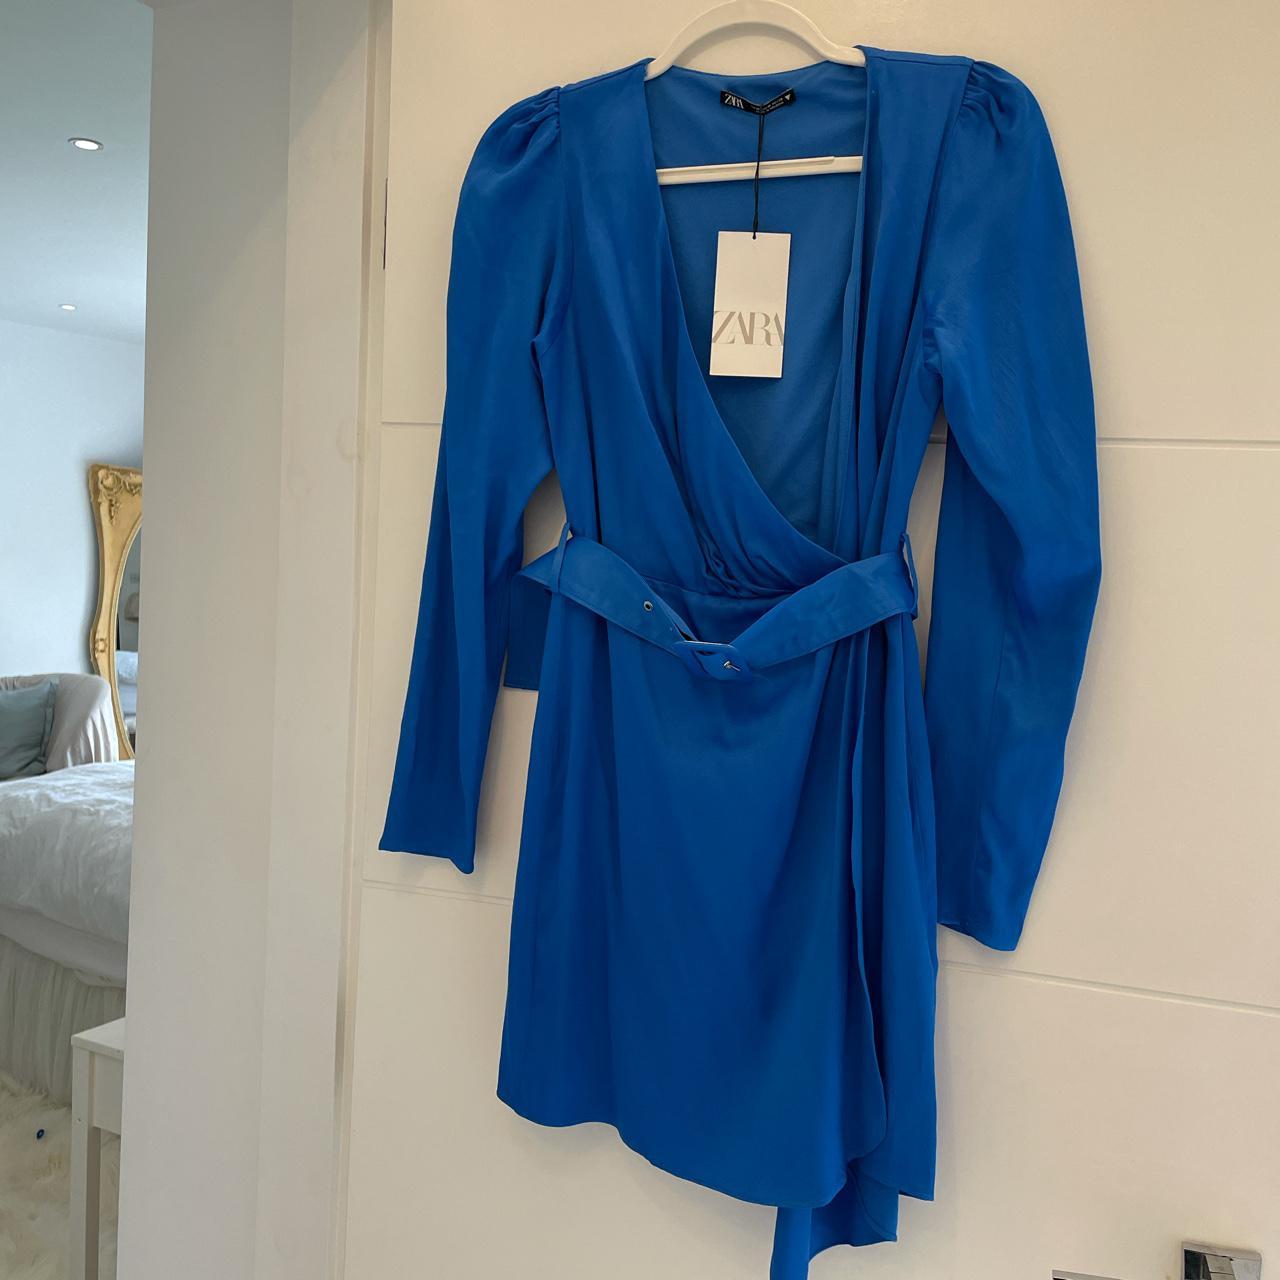 Zara long sleeve cobalt blue dress ...